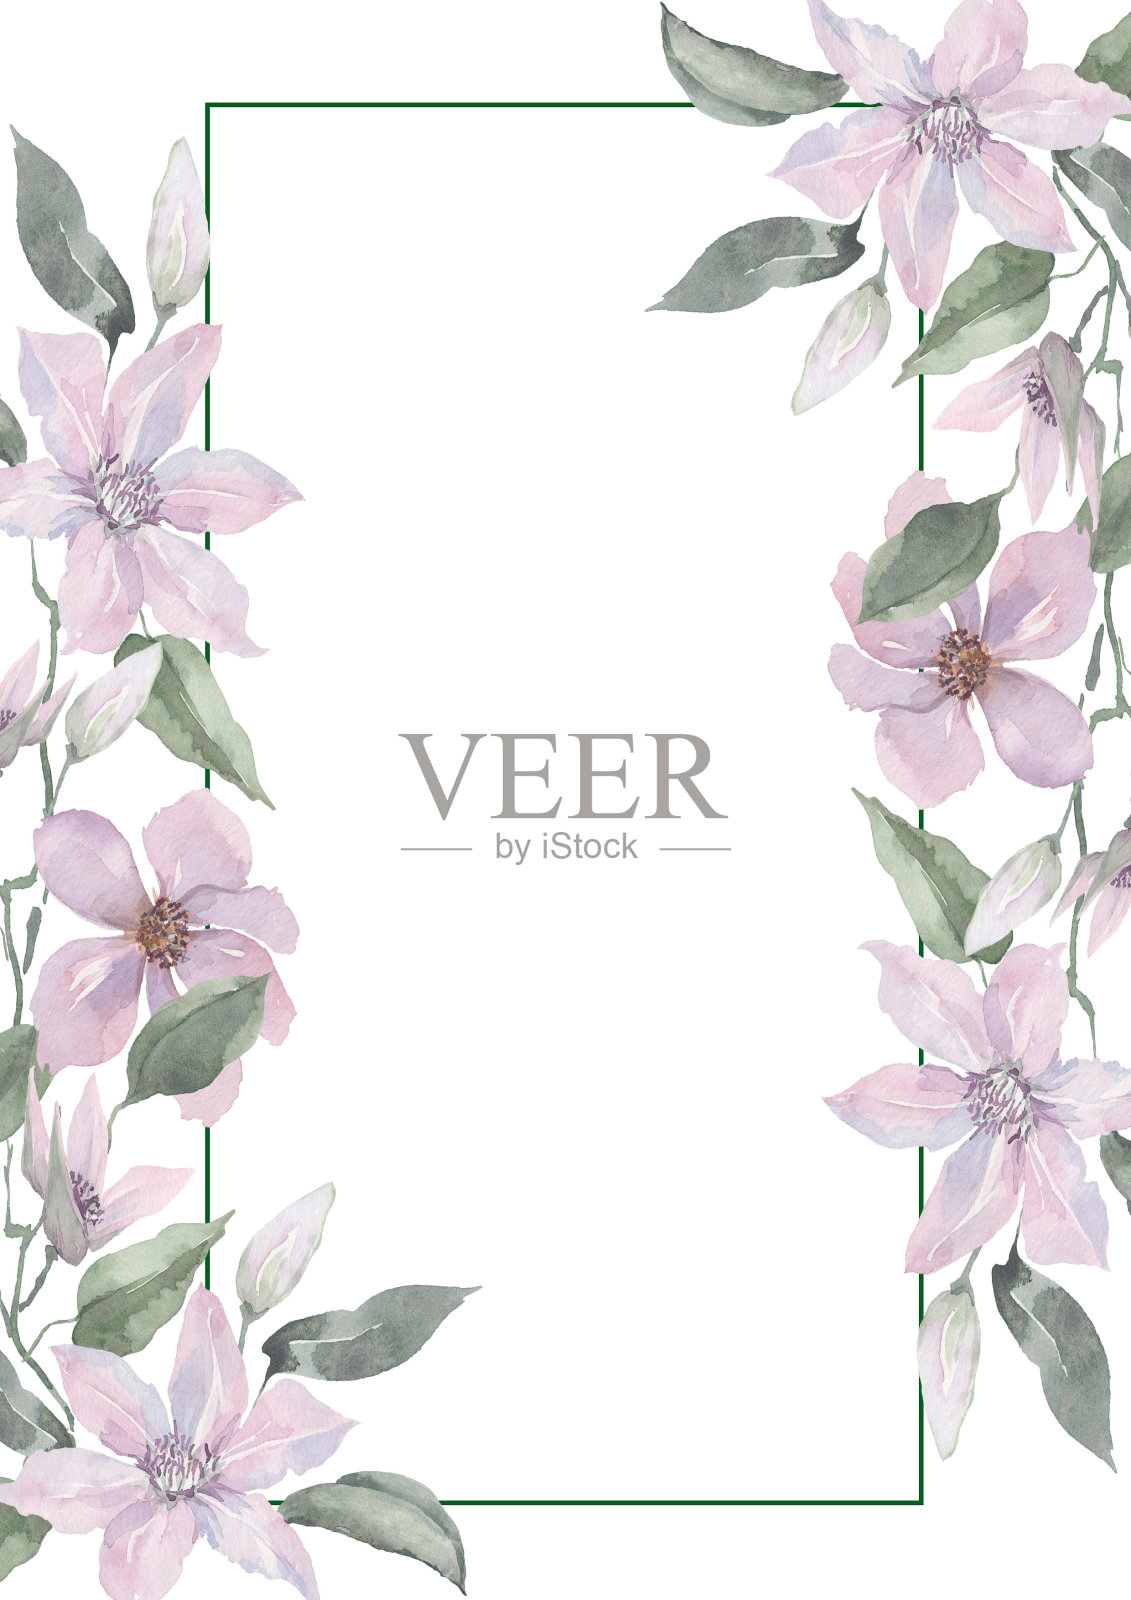 淡紫色的铁线莲花朵有着精致的花蕾和绿色的叶子，装饰着一个长方形的框架。白色背景上的水彩画。插画图片素材